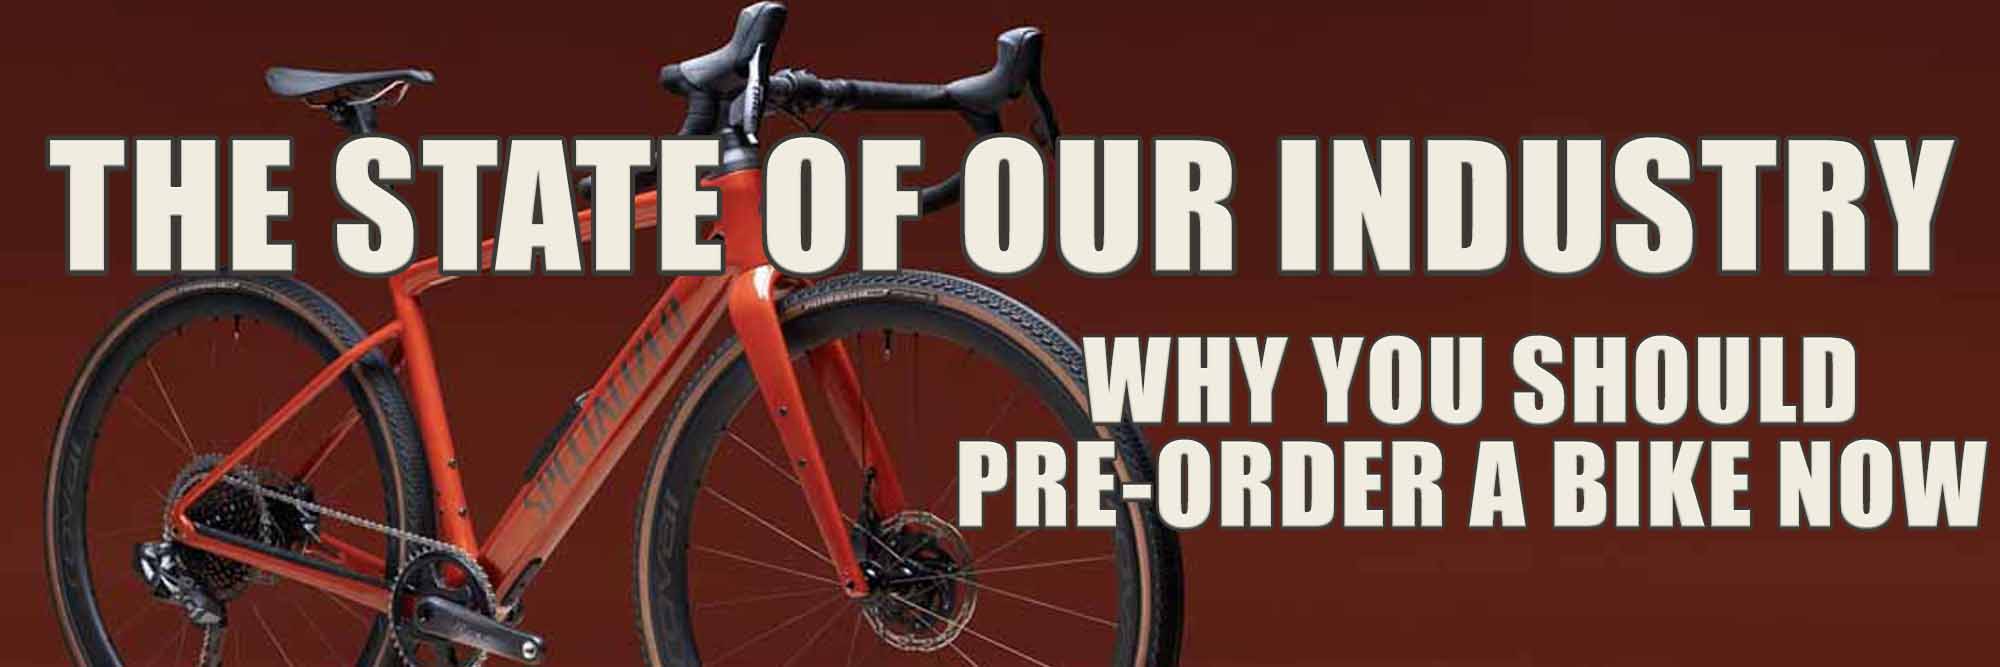 Why you should pre-order a bike